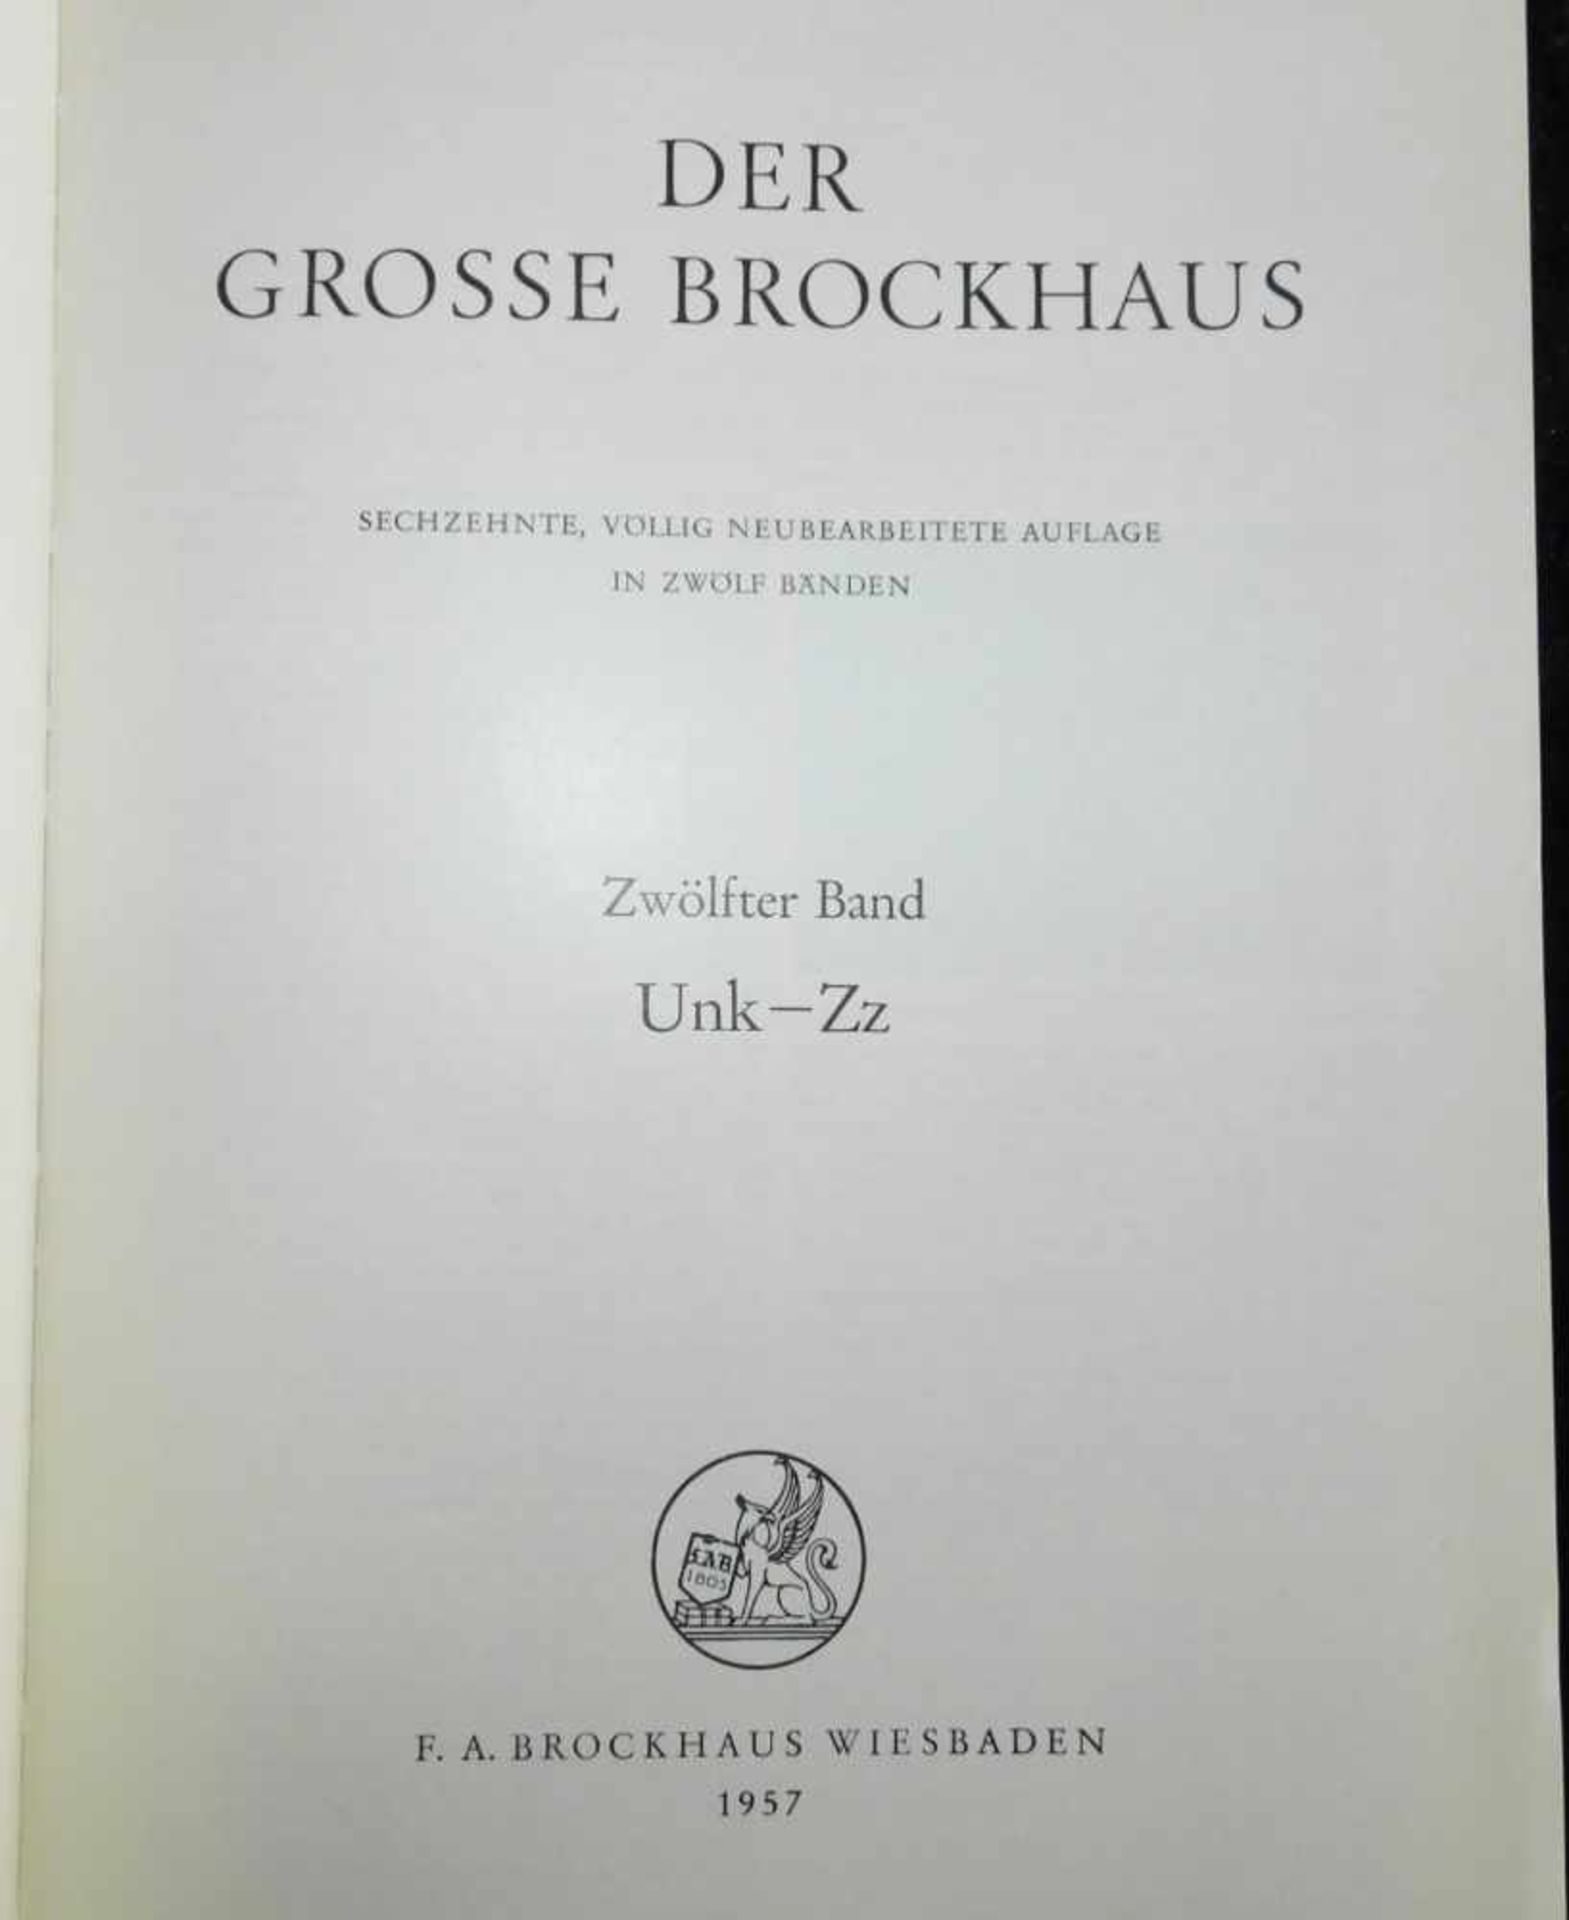 Der grosse Brockhaus,12 Bände, 16. völlig neu überarb. Auflage, F.A. Brockhaus Wiesbaden 1952- - Bild 3 aus 3